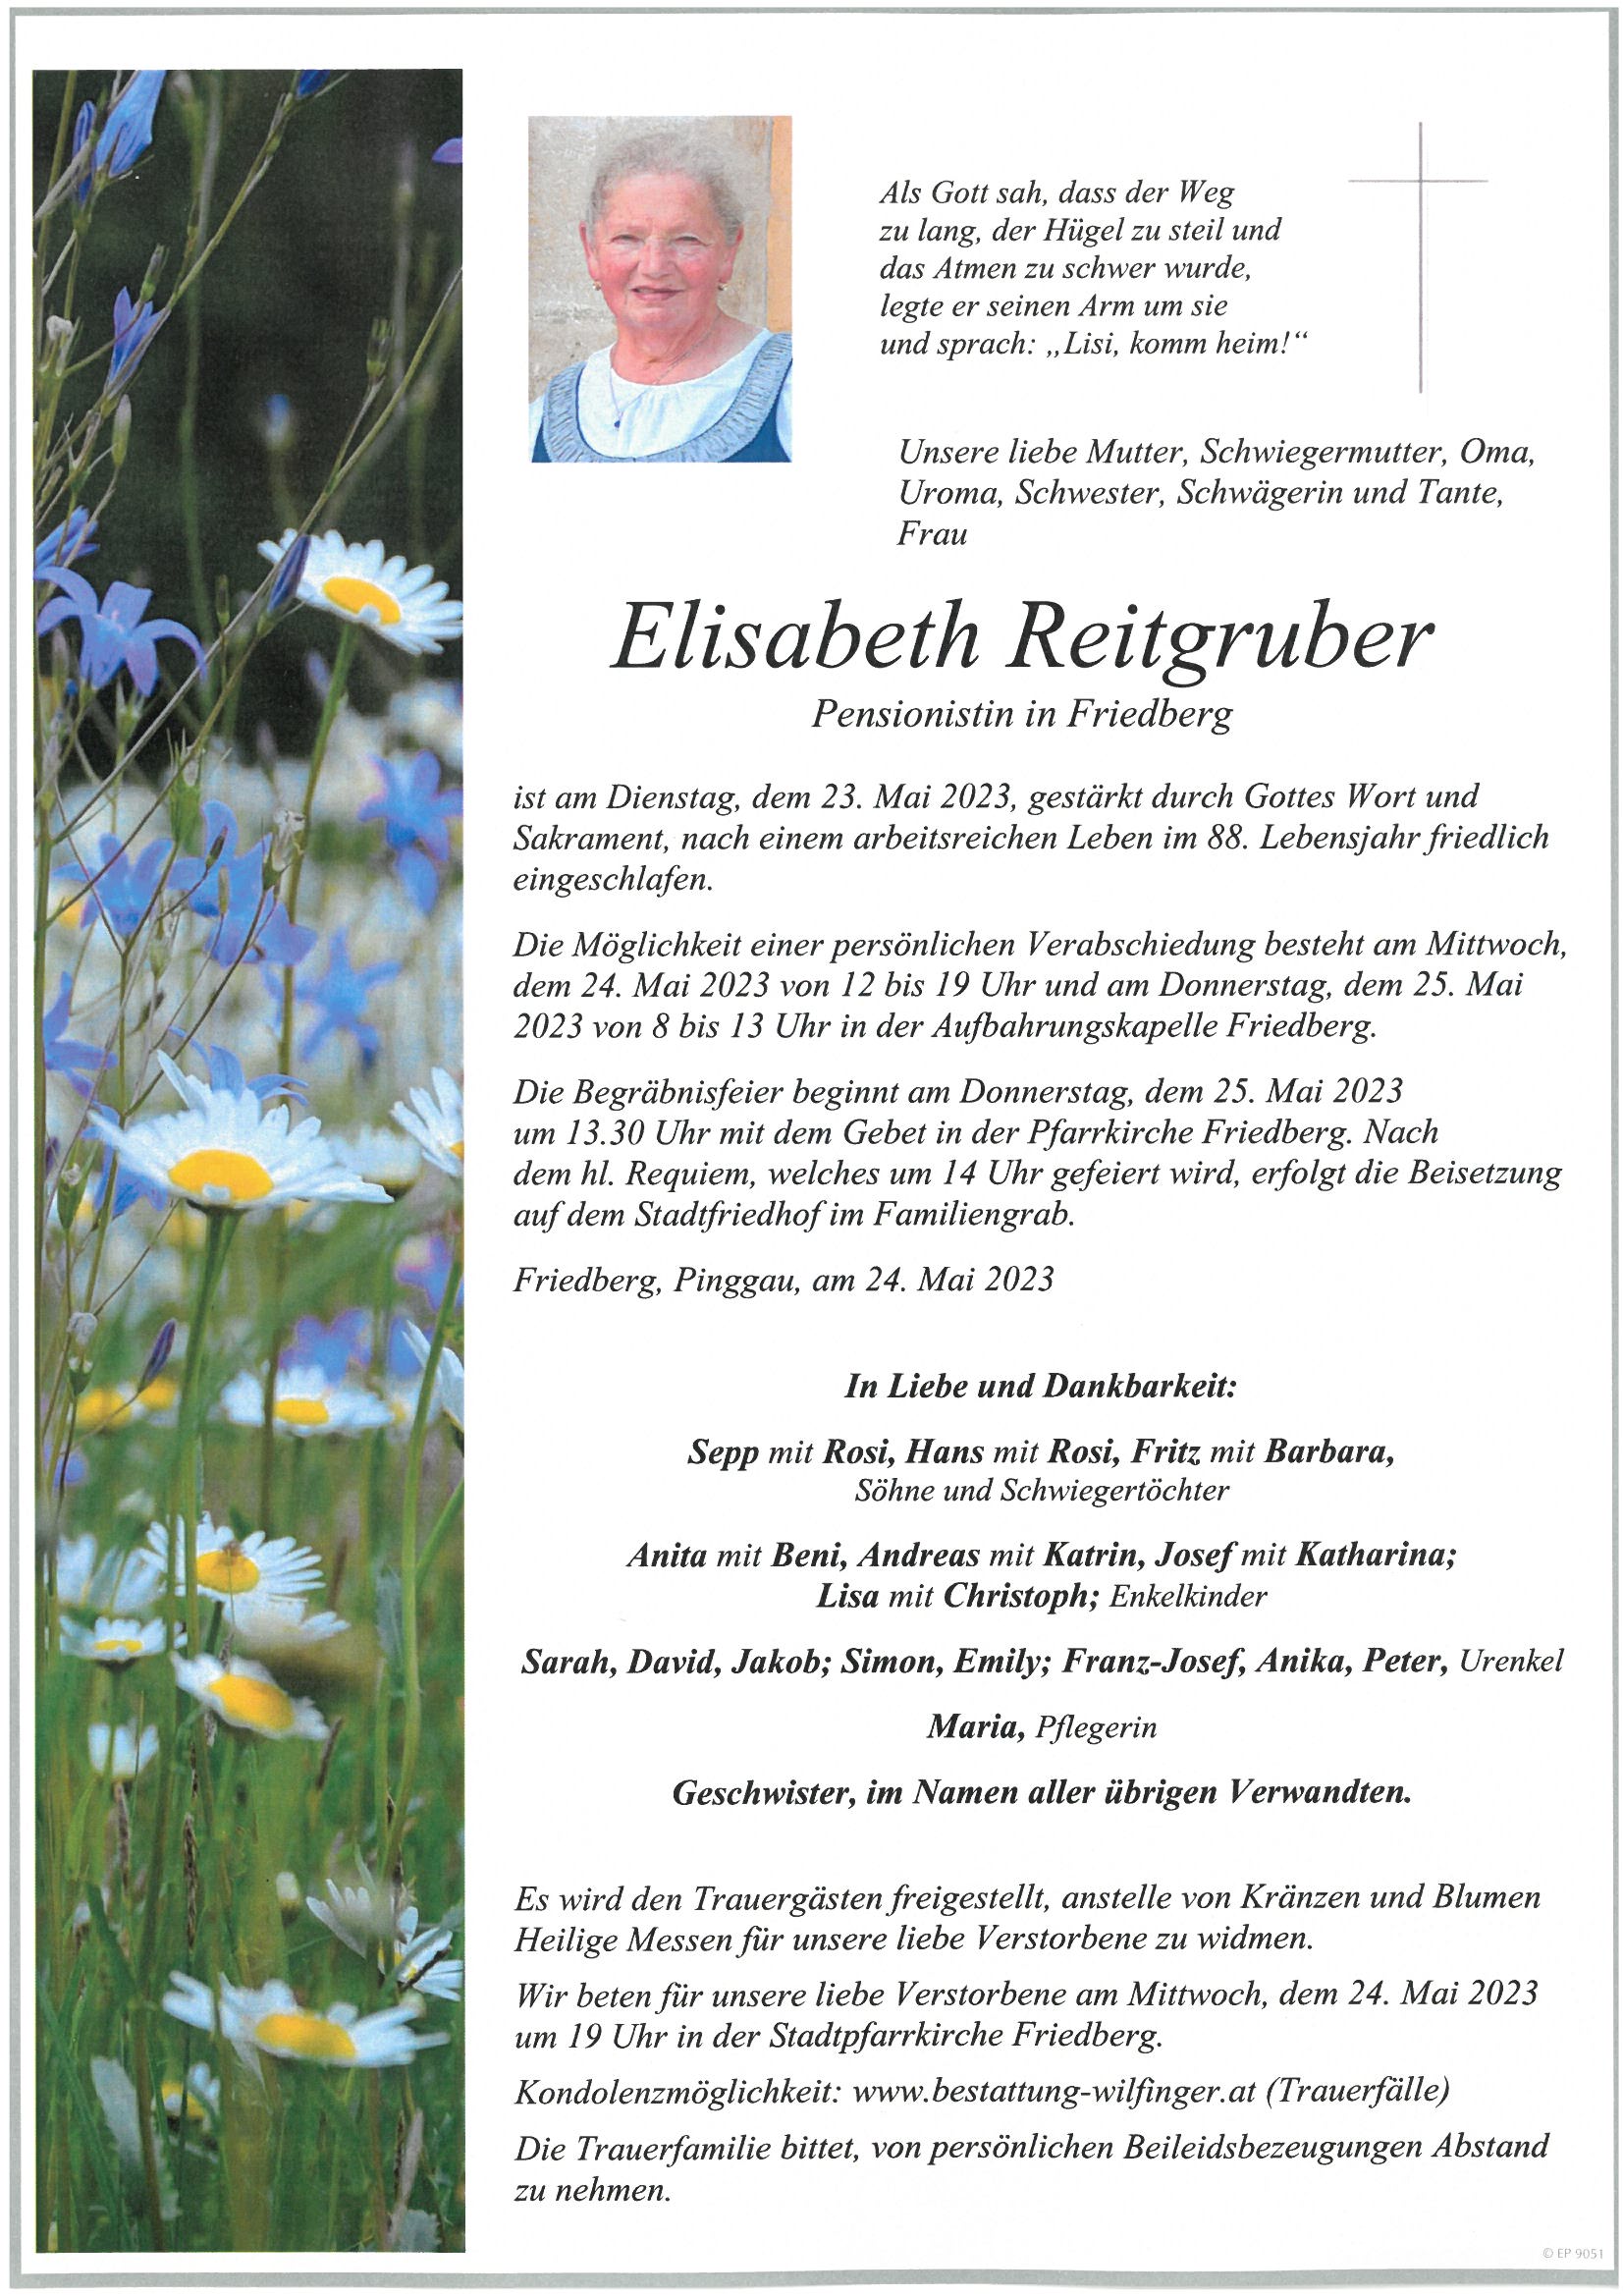 Elisabeth Reitgruber, Friedberg